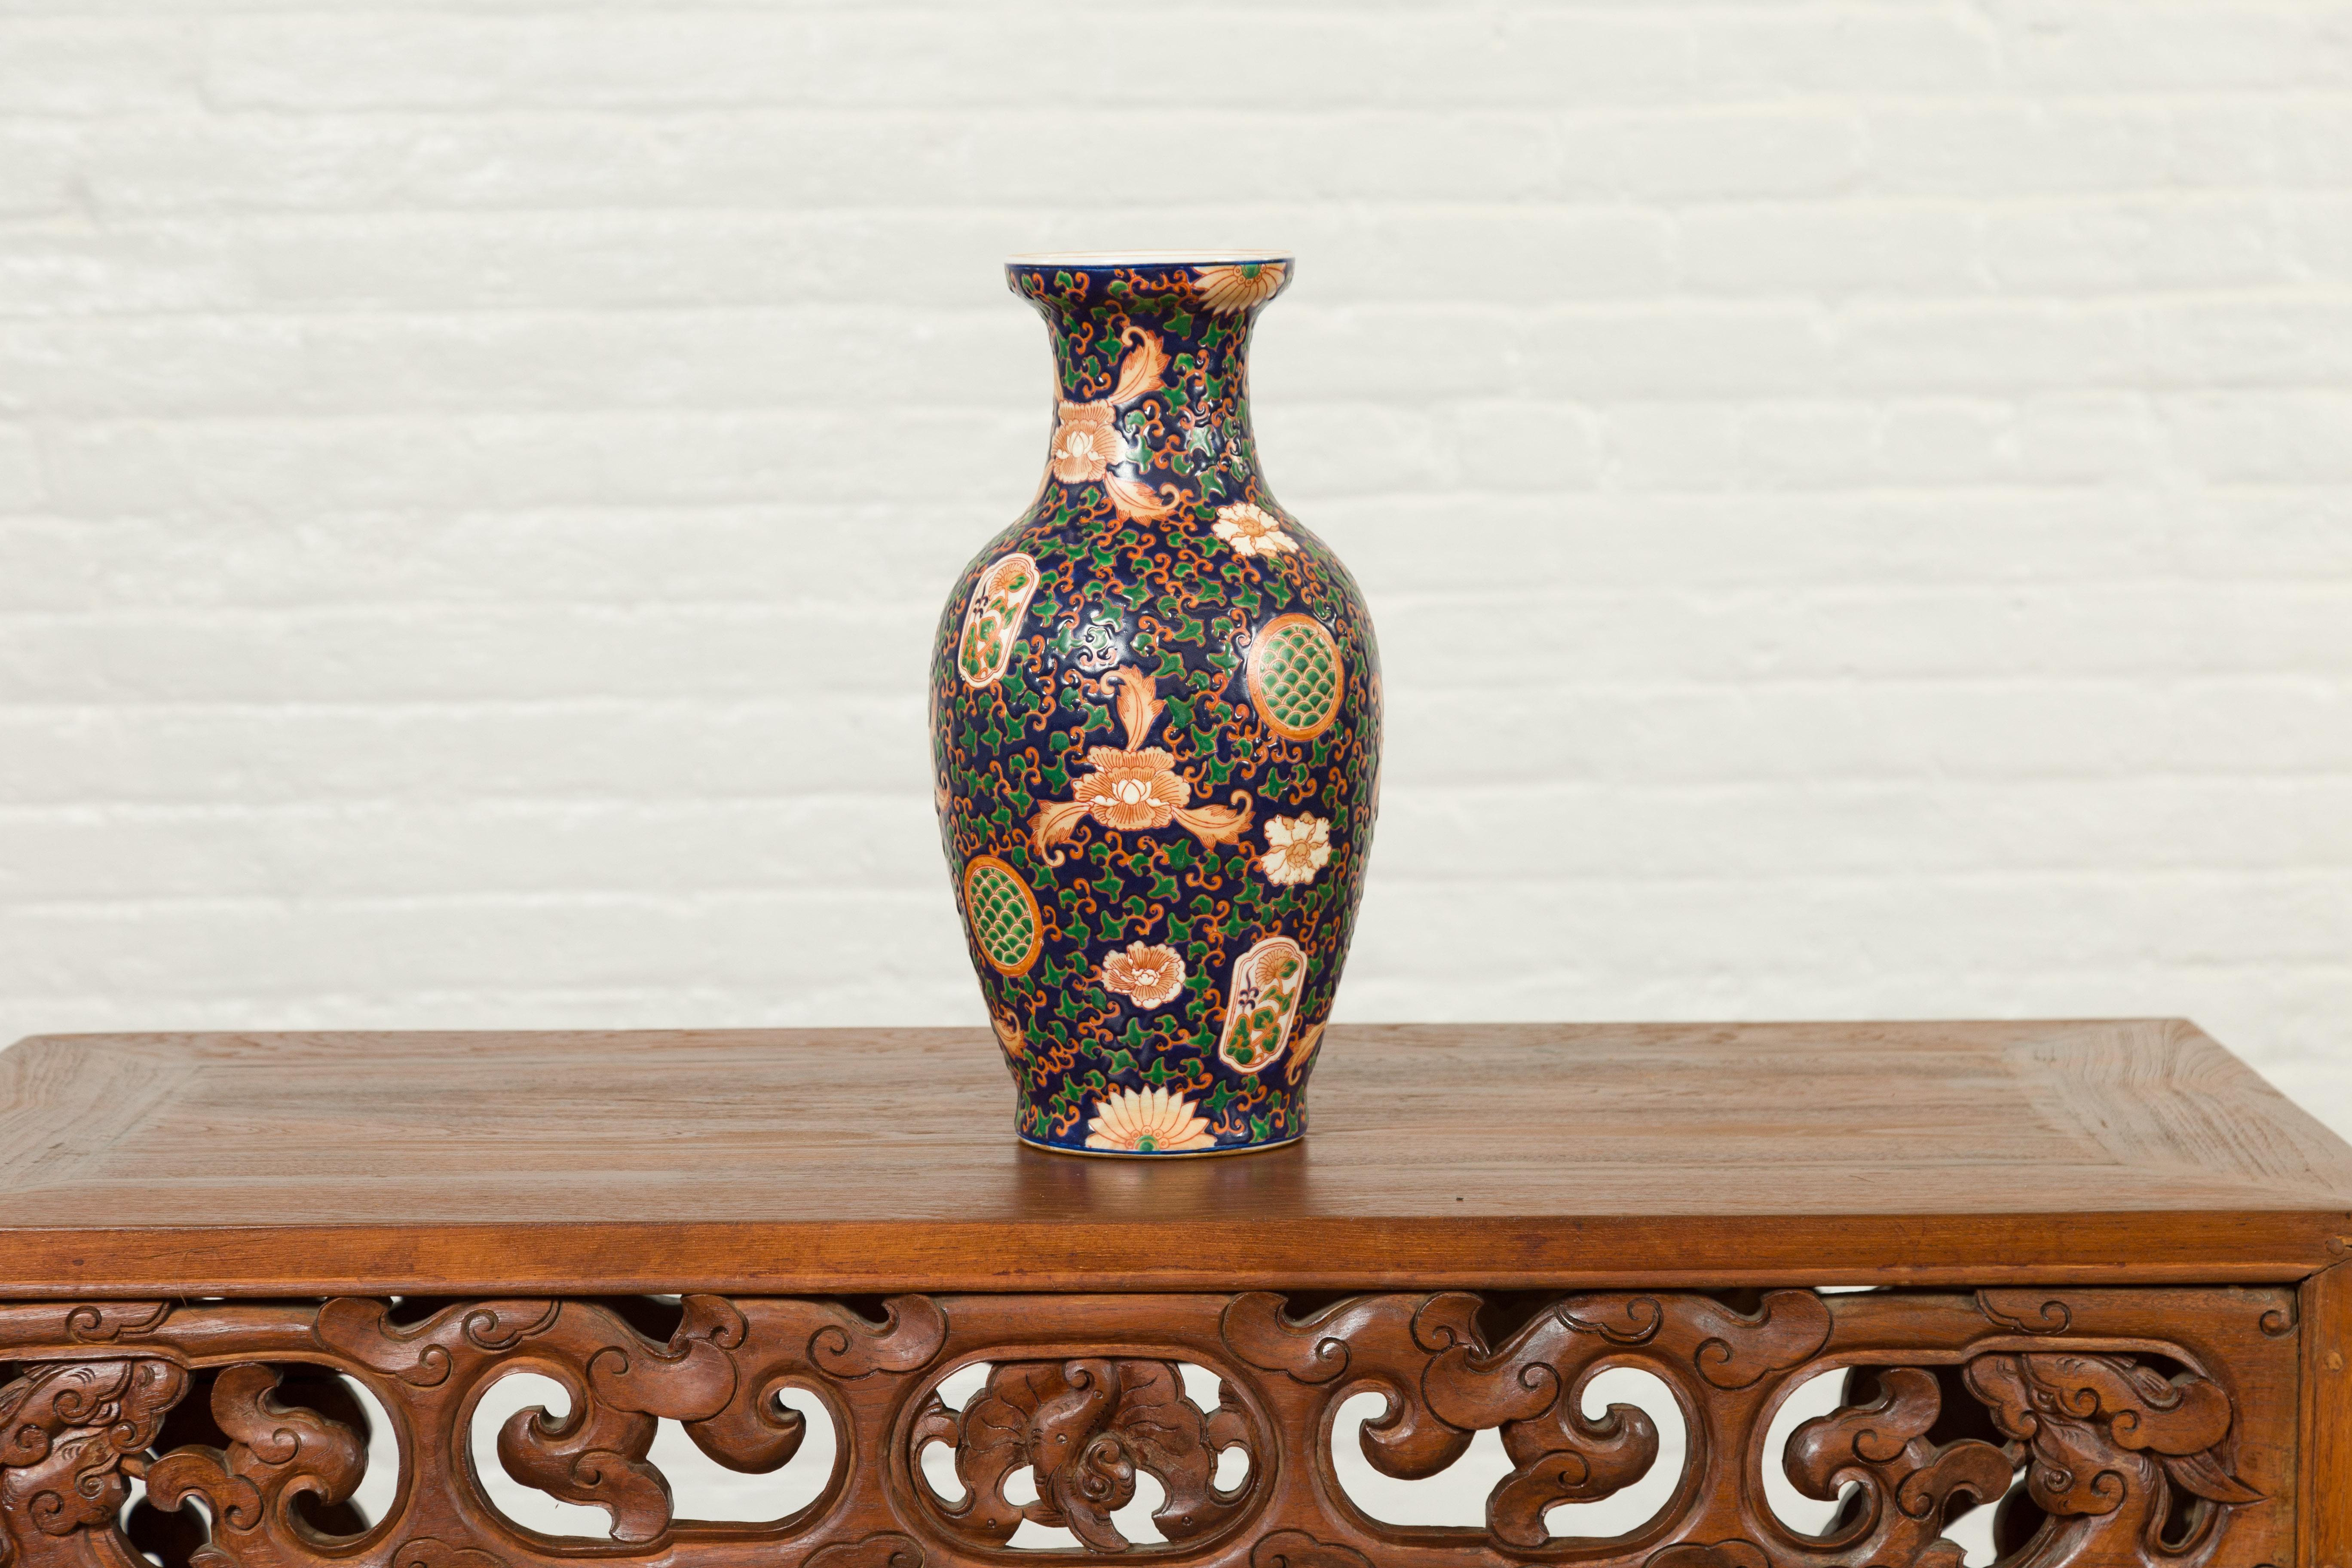 Un vase chinois contemporain peint à la main avec un fond bleu cobalt, un décor floral vert et orange. Ce vase chinois peint à la main nous charme par l'abondance de ses motifs. Il présente un fond bleu cobalt accentué par de délicates petites